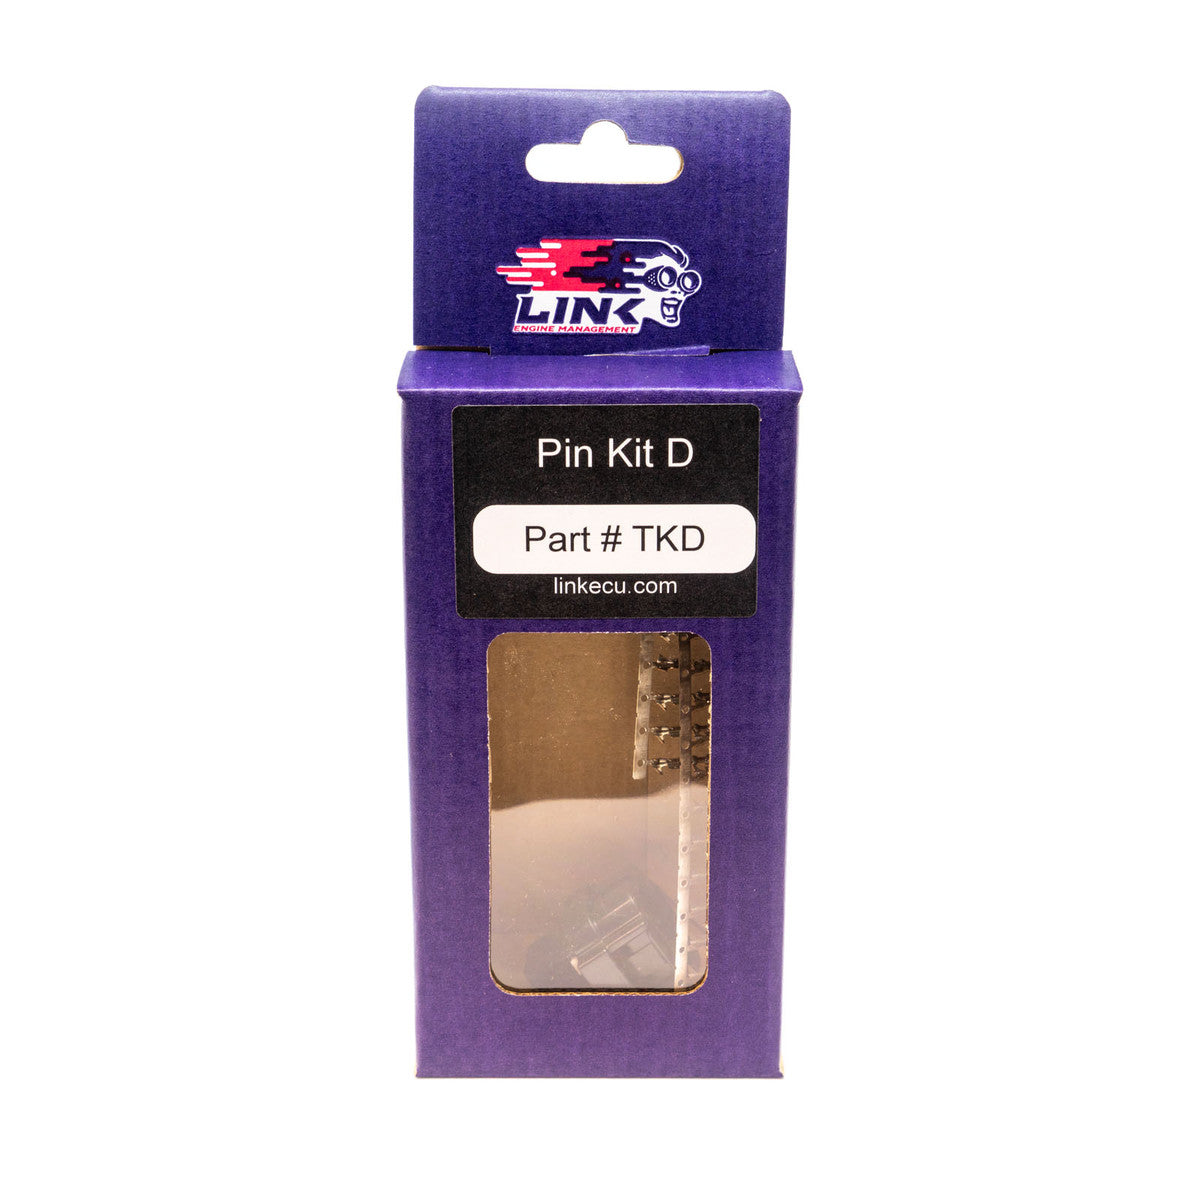 LINK ECU - Pin Kit D (TKD) (101-0120)